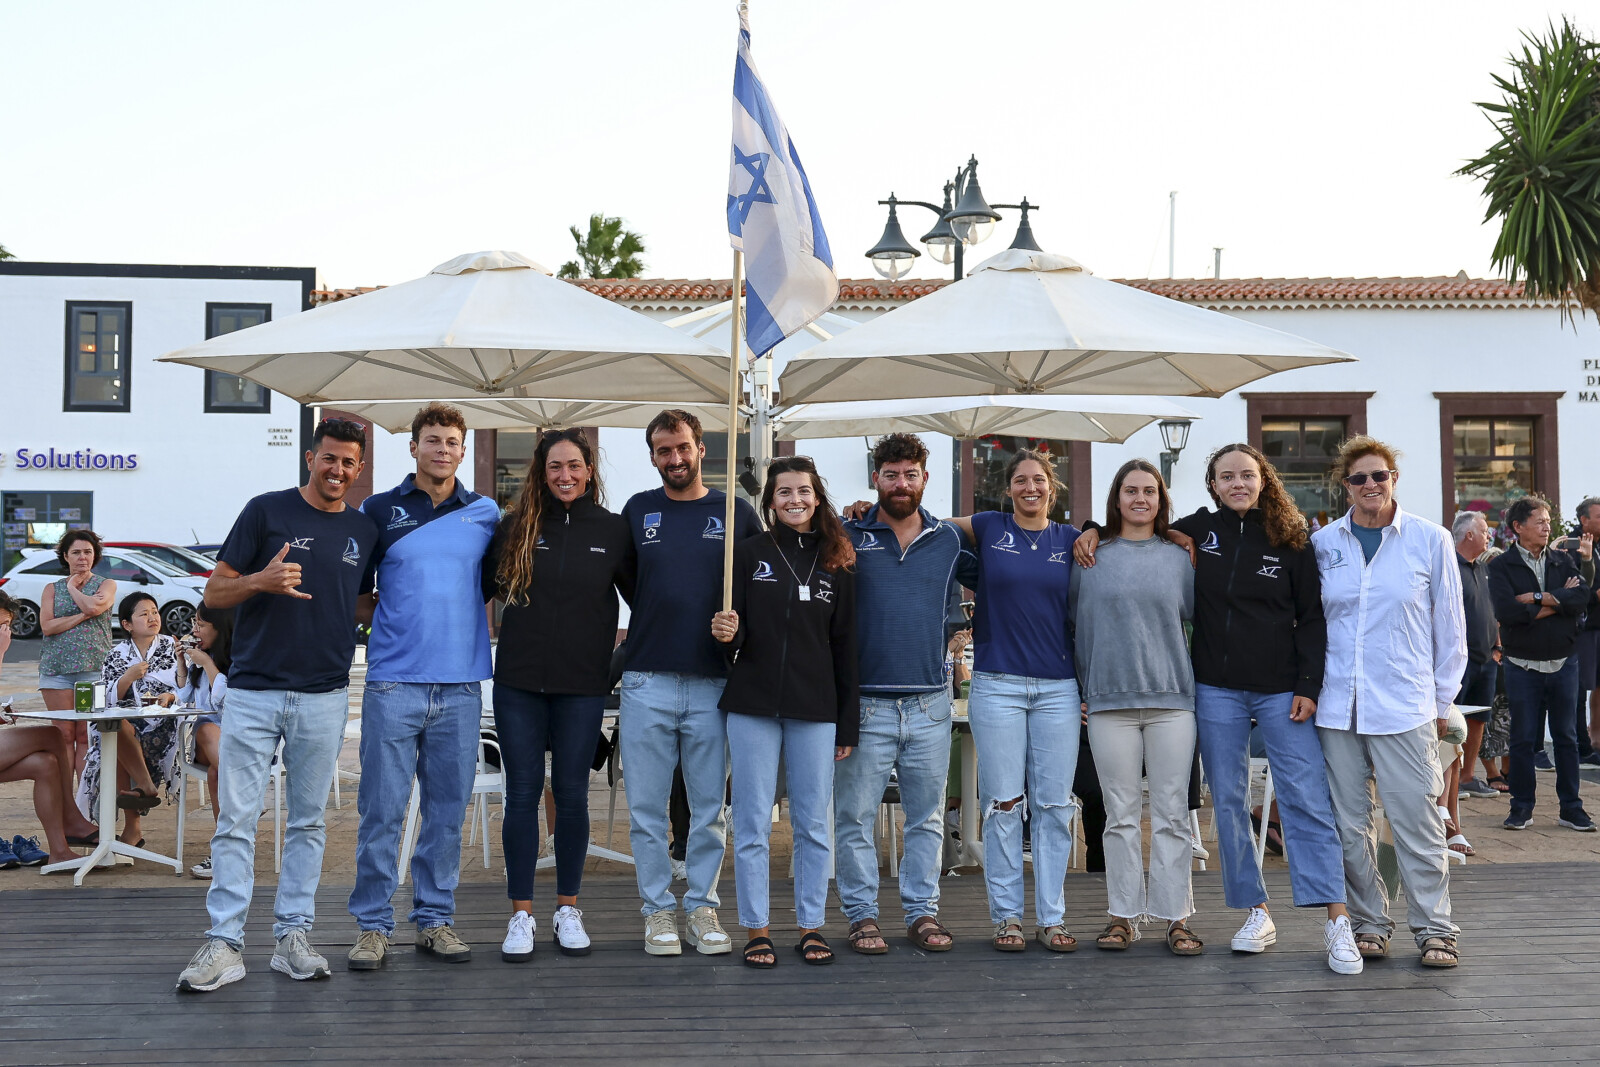 נבחרת הגלישה הישראלית באליפות העולם ב-IQ פויל (צילום: sailing energy/iq foil class)